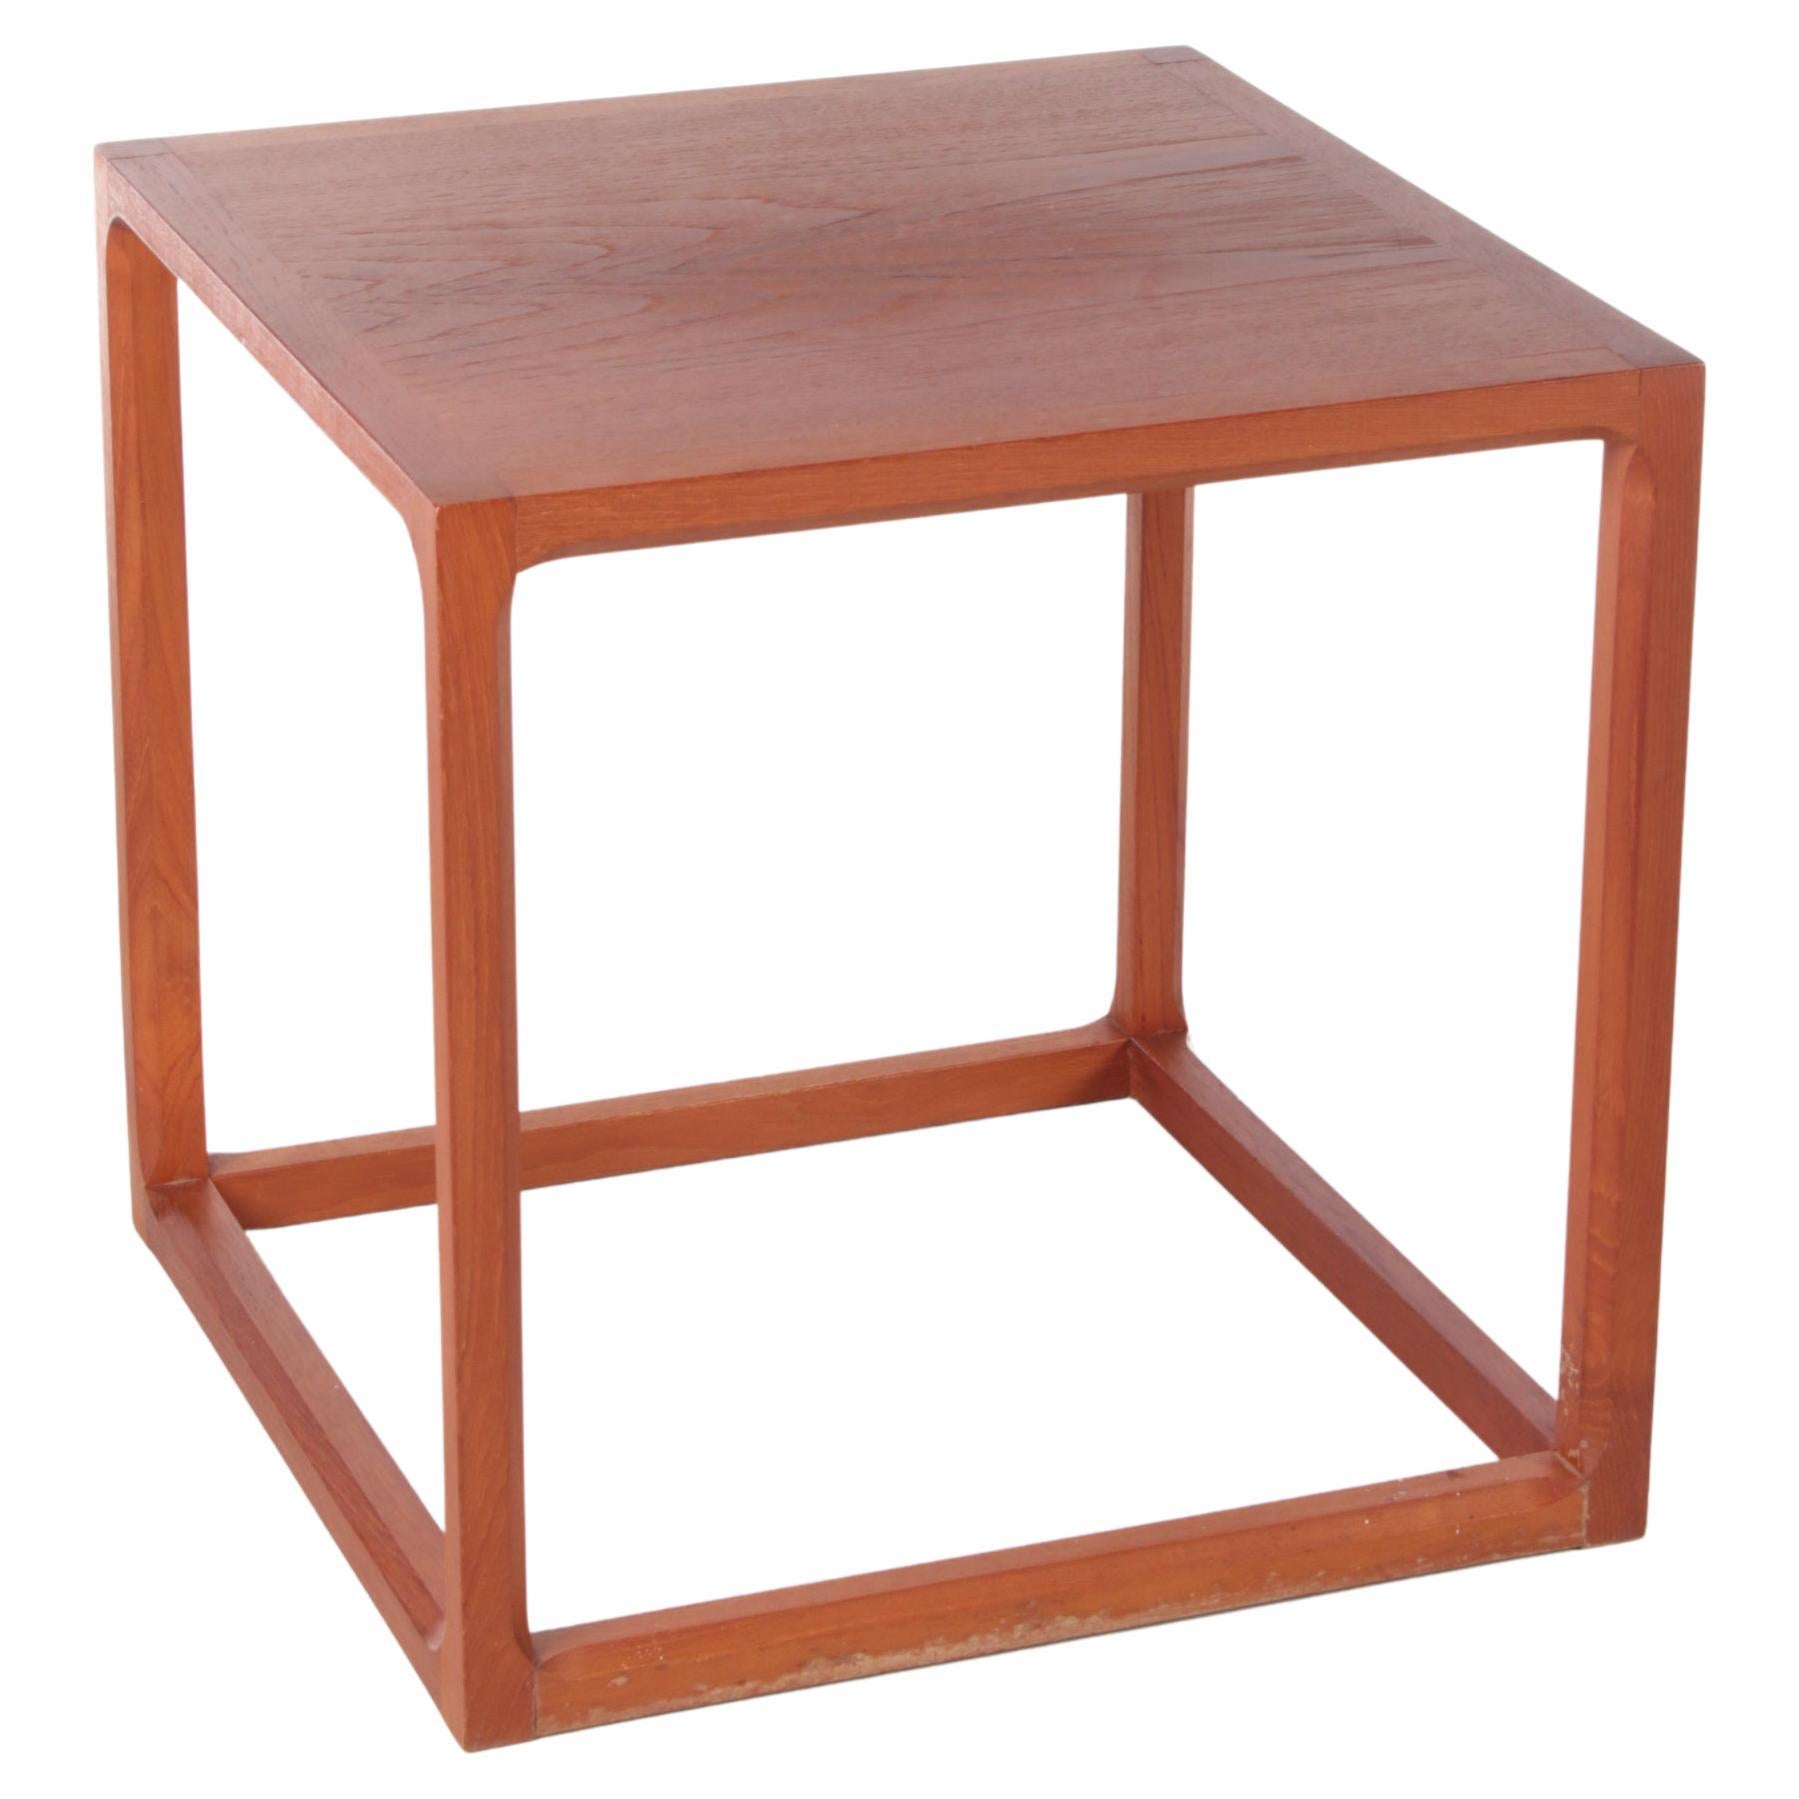 Cube Side Table by Aksel Kjersgaard, Denmark 1950s